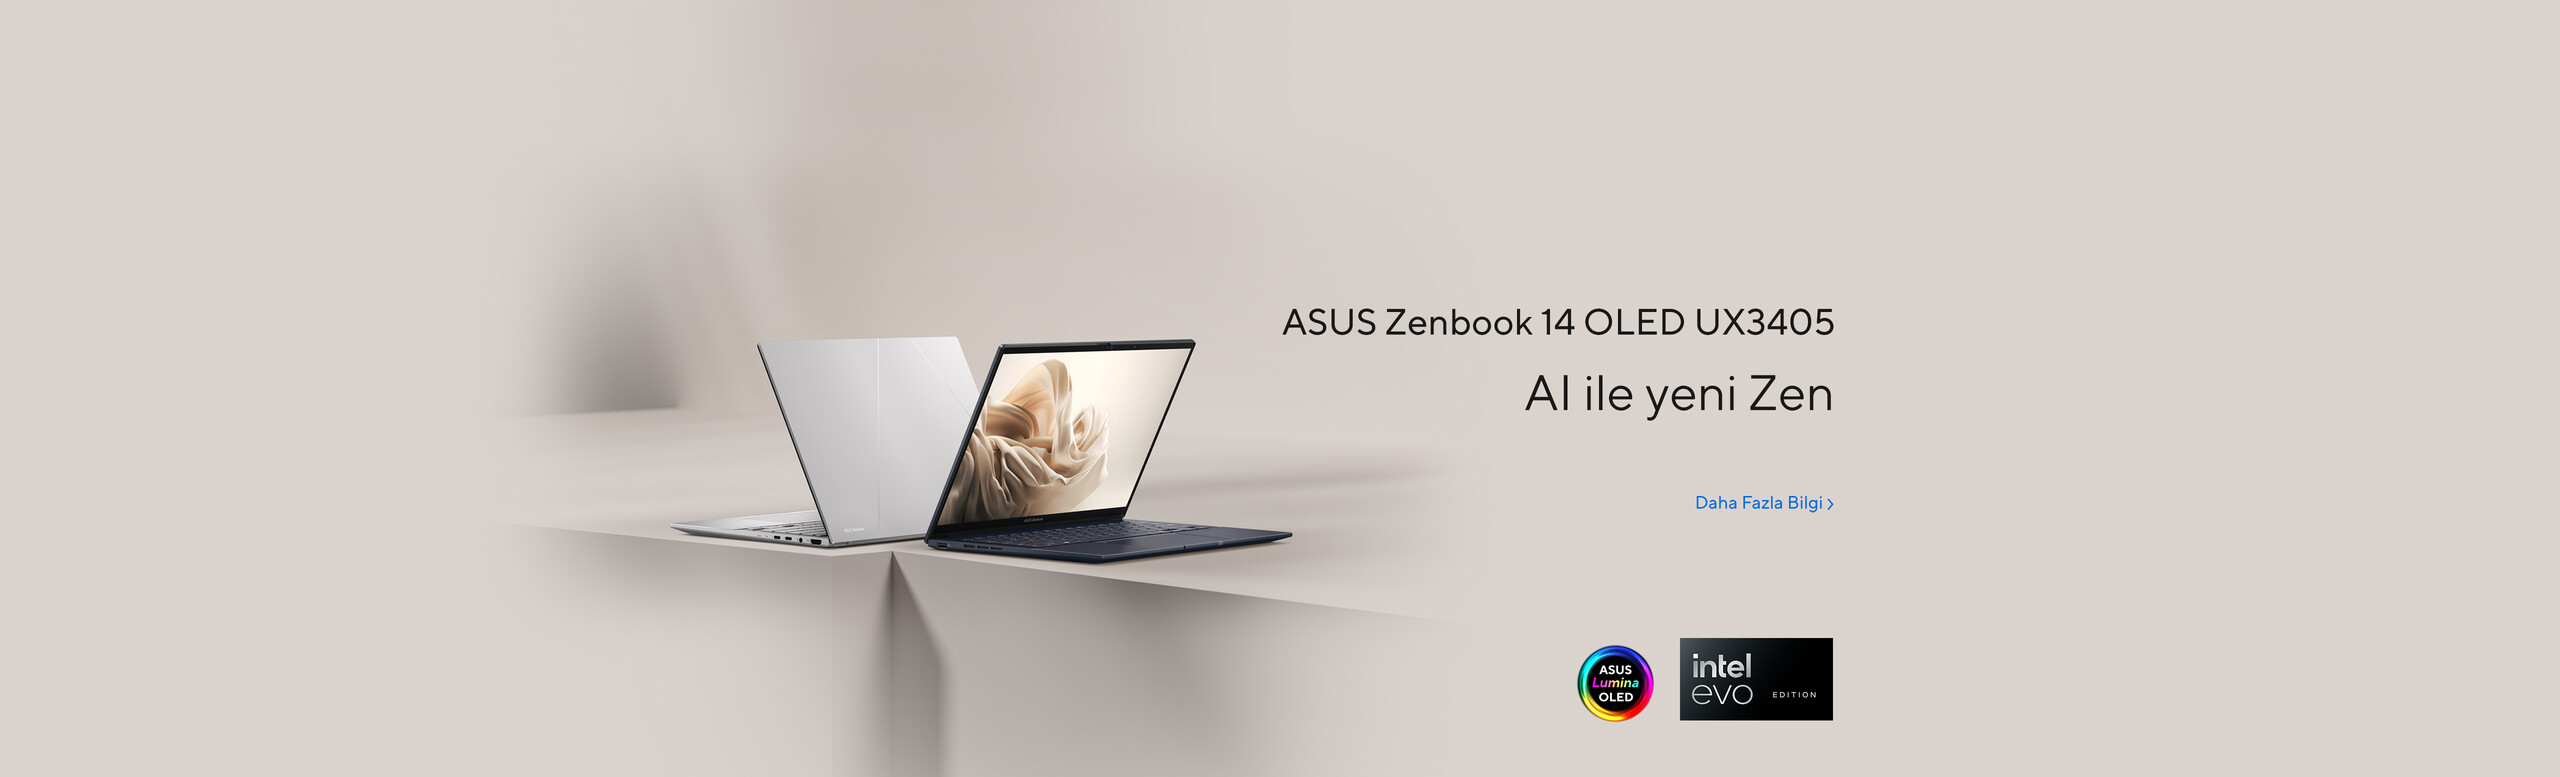 AI ile yeni Zen - ASUS Zenbook 14 OLED UX3405 şimdi satışta!